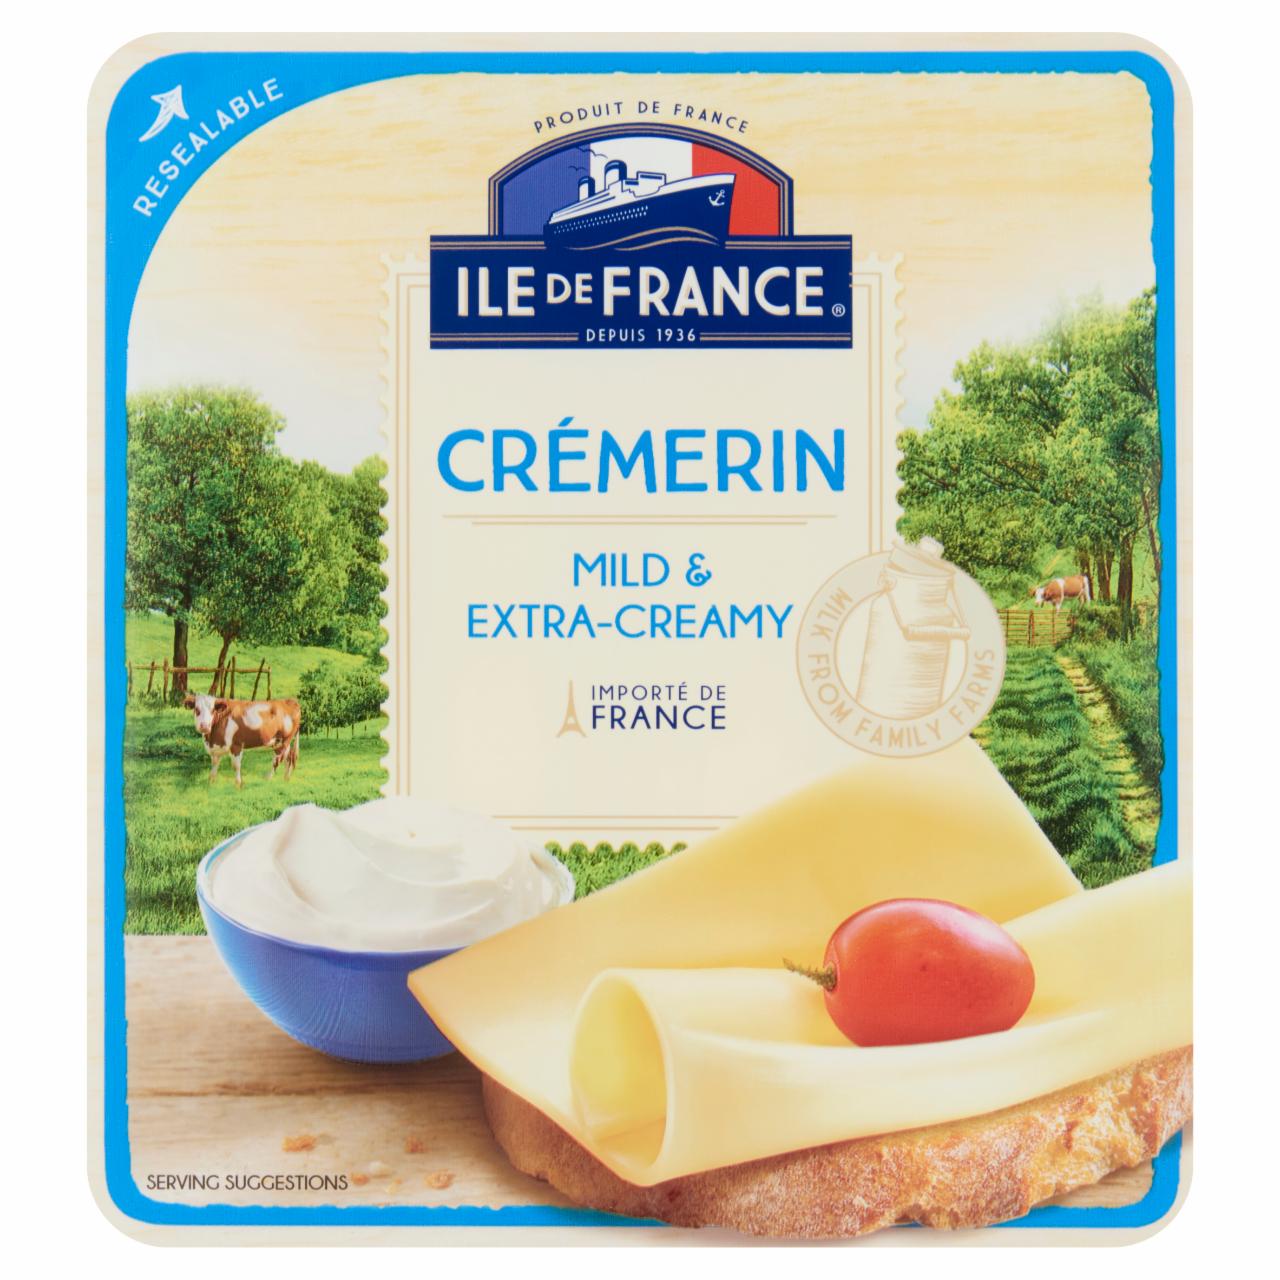 Képek - Ile de France Crémerin szeletelt zsíros félkemény sajt 100 g